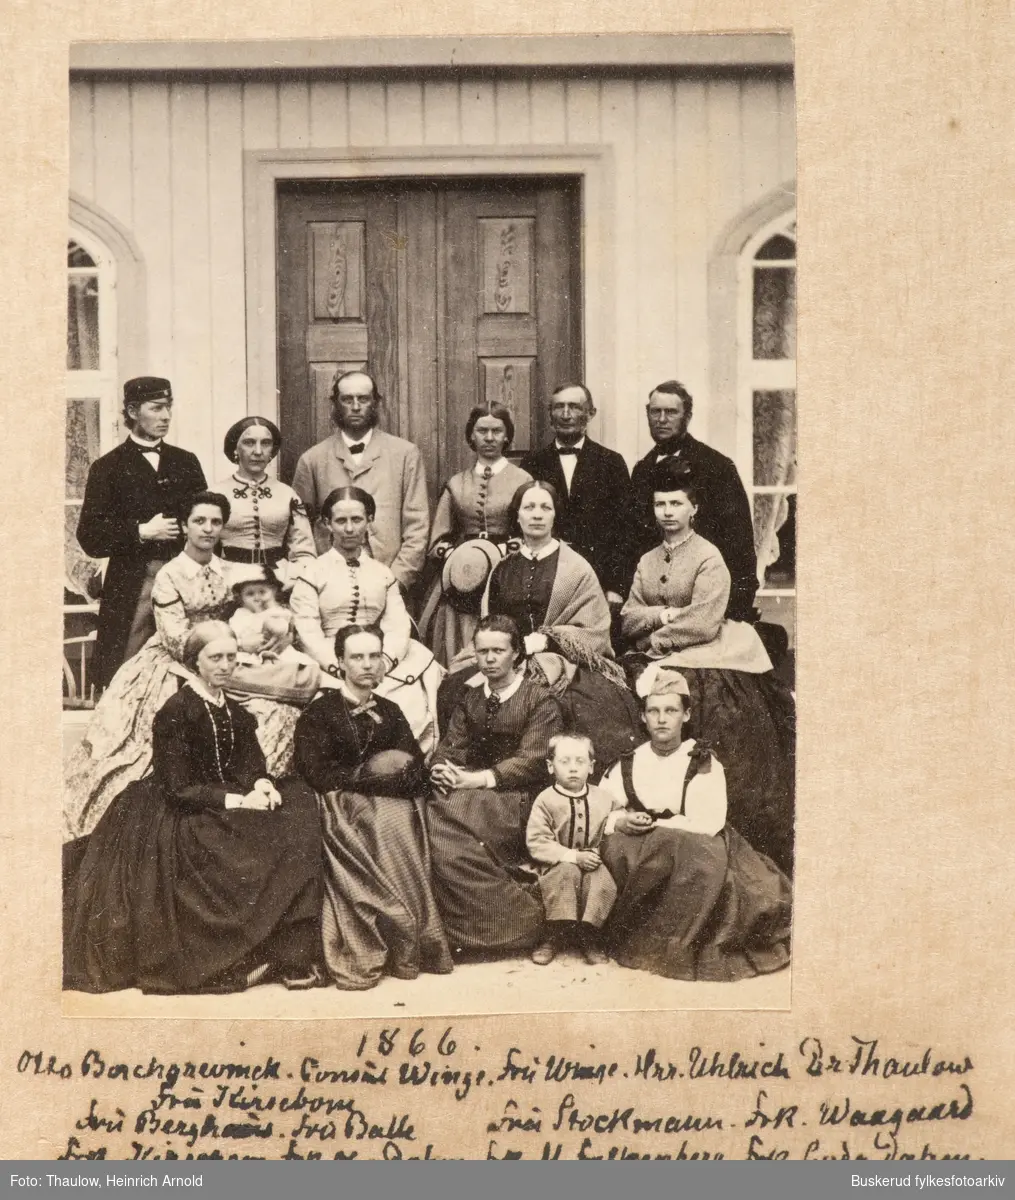 Otto Borgerwinck, Winge, Fru Winge, Hr. Urbrick, Dr. Thaulow, Fru Kirsebom, Fru Stockmann, Fru Waagaard, Fru Balke, Fru Falkenberg, 
1866